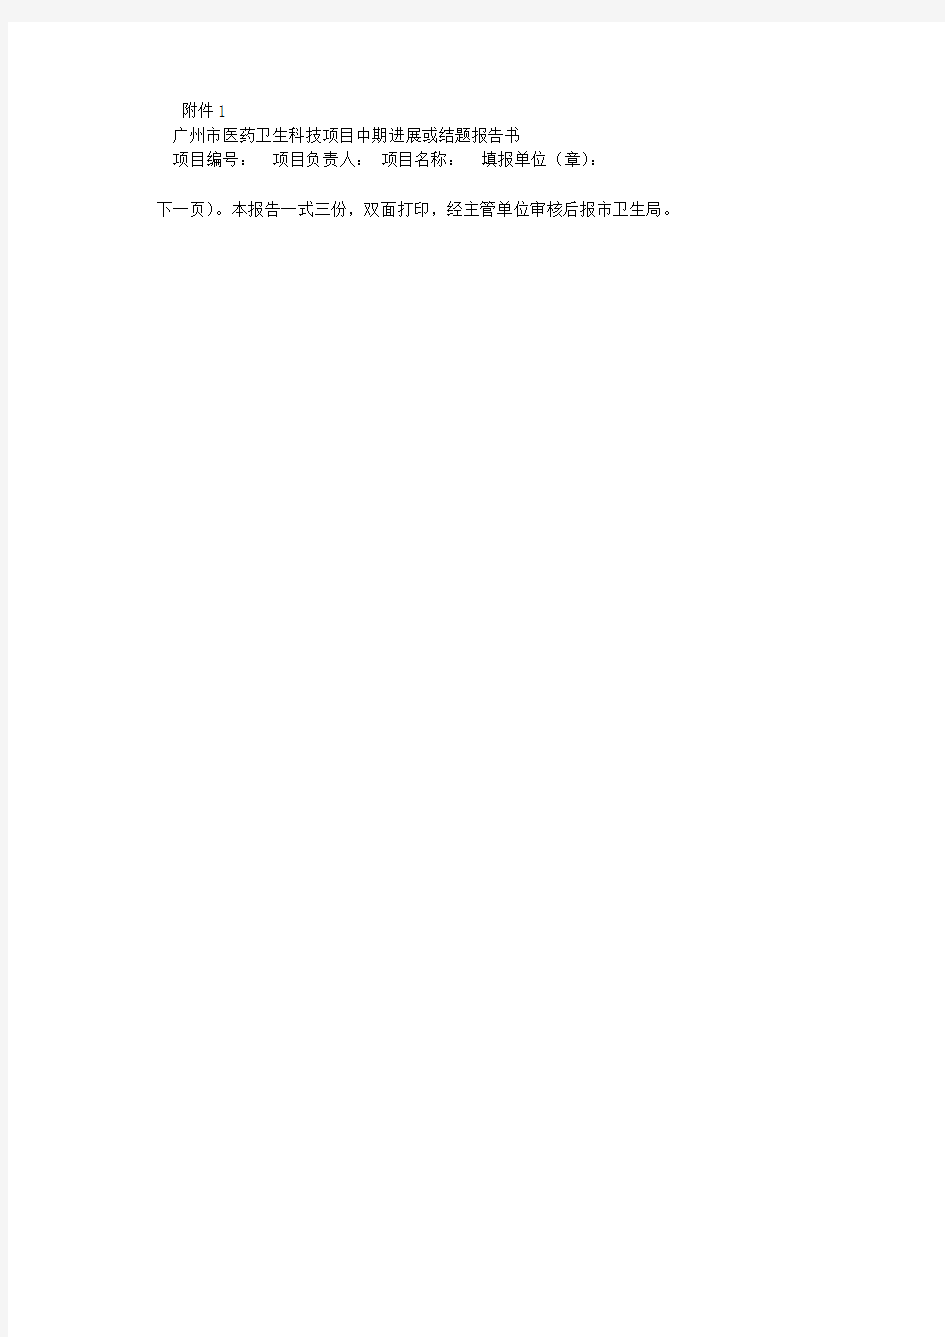 广州市医药卫生科技项目中期进展或结题报告书 (500字)